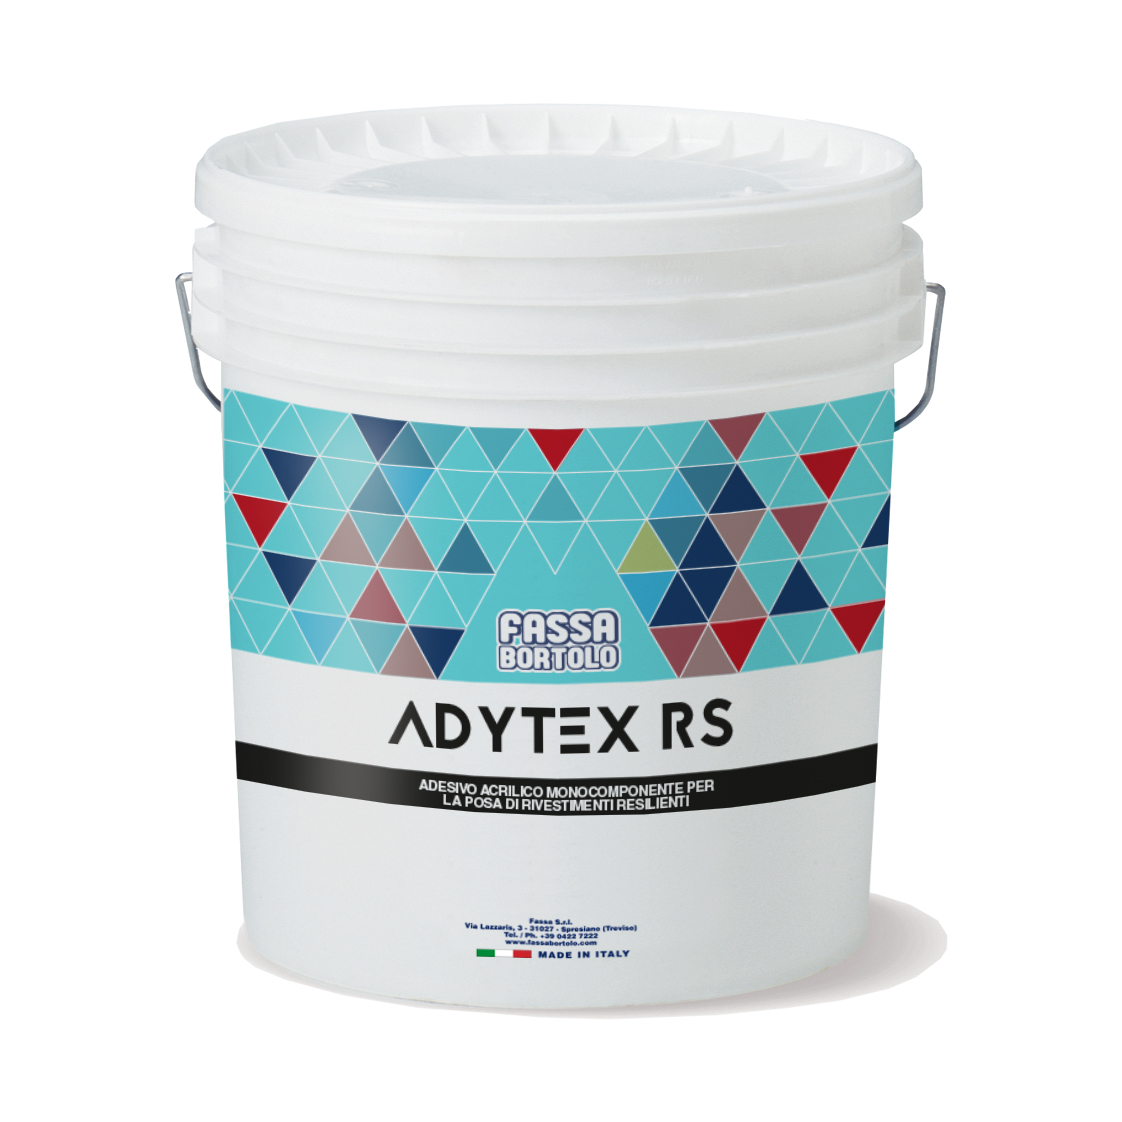 ADYTEX RS: Adhesivo acrílico monocomponente con elevado fraguado inicial para pavimentos flexibles, para interiores